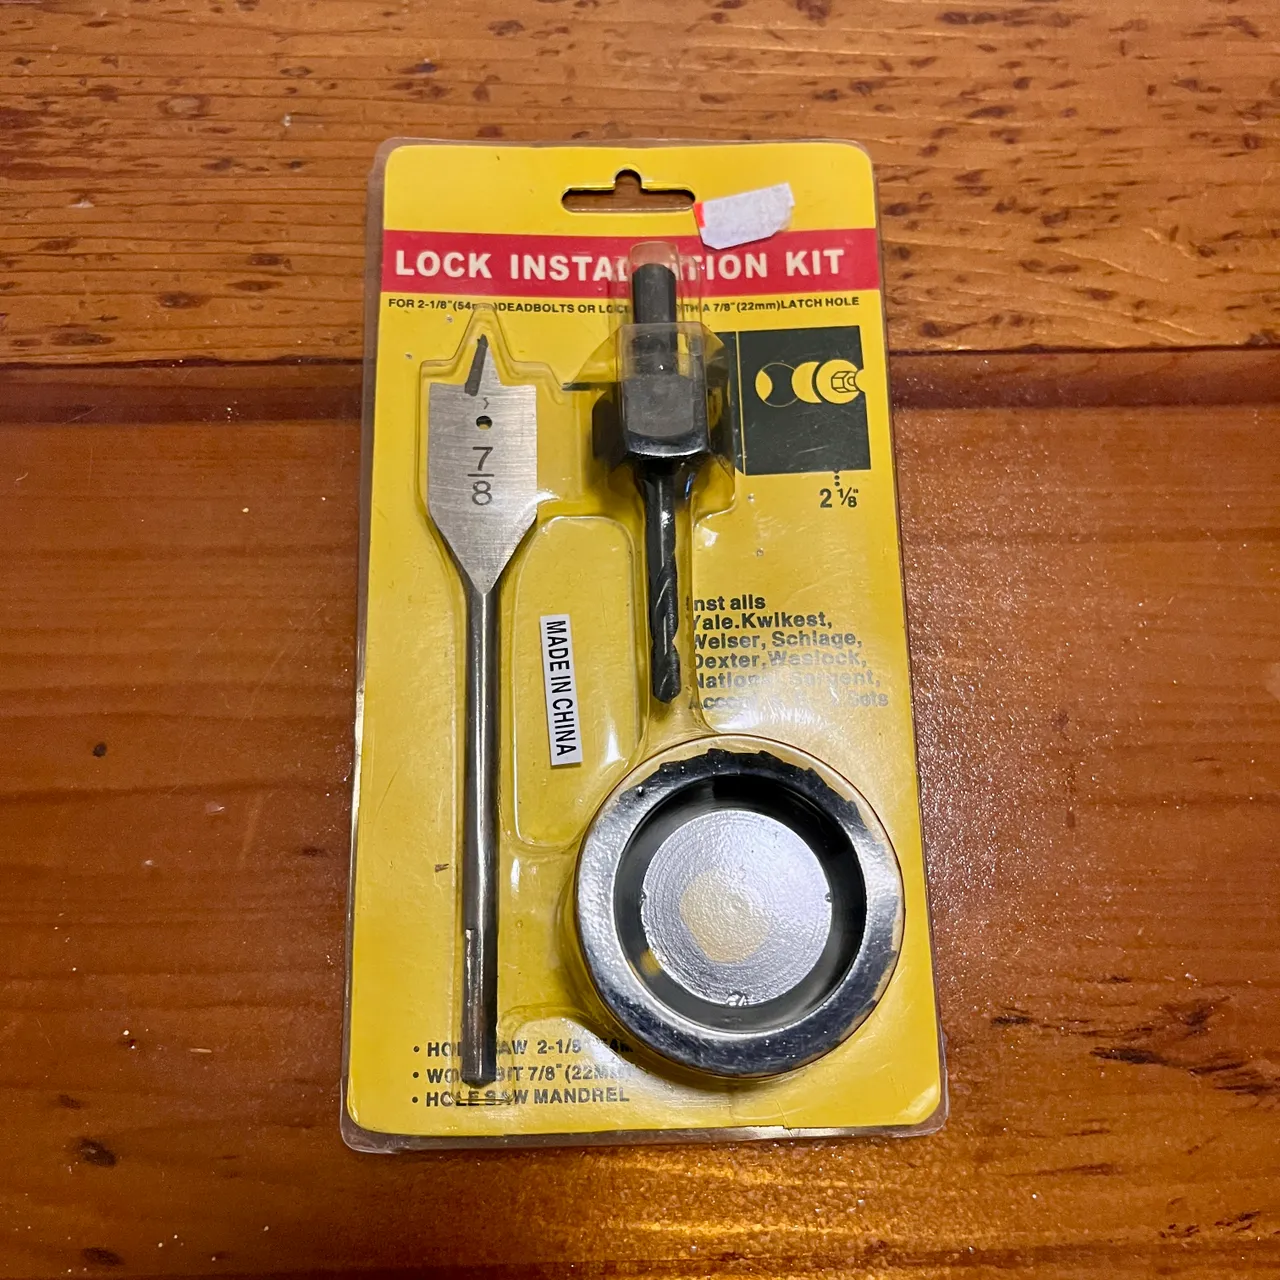 Lock Installation Kit photo 1